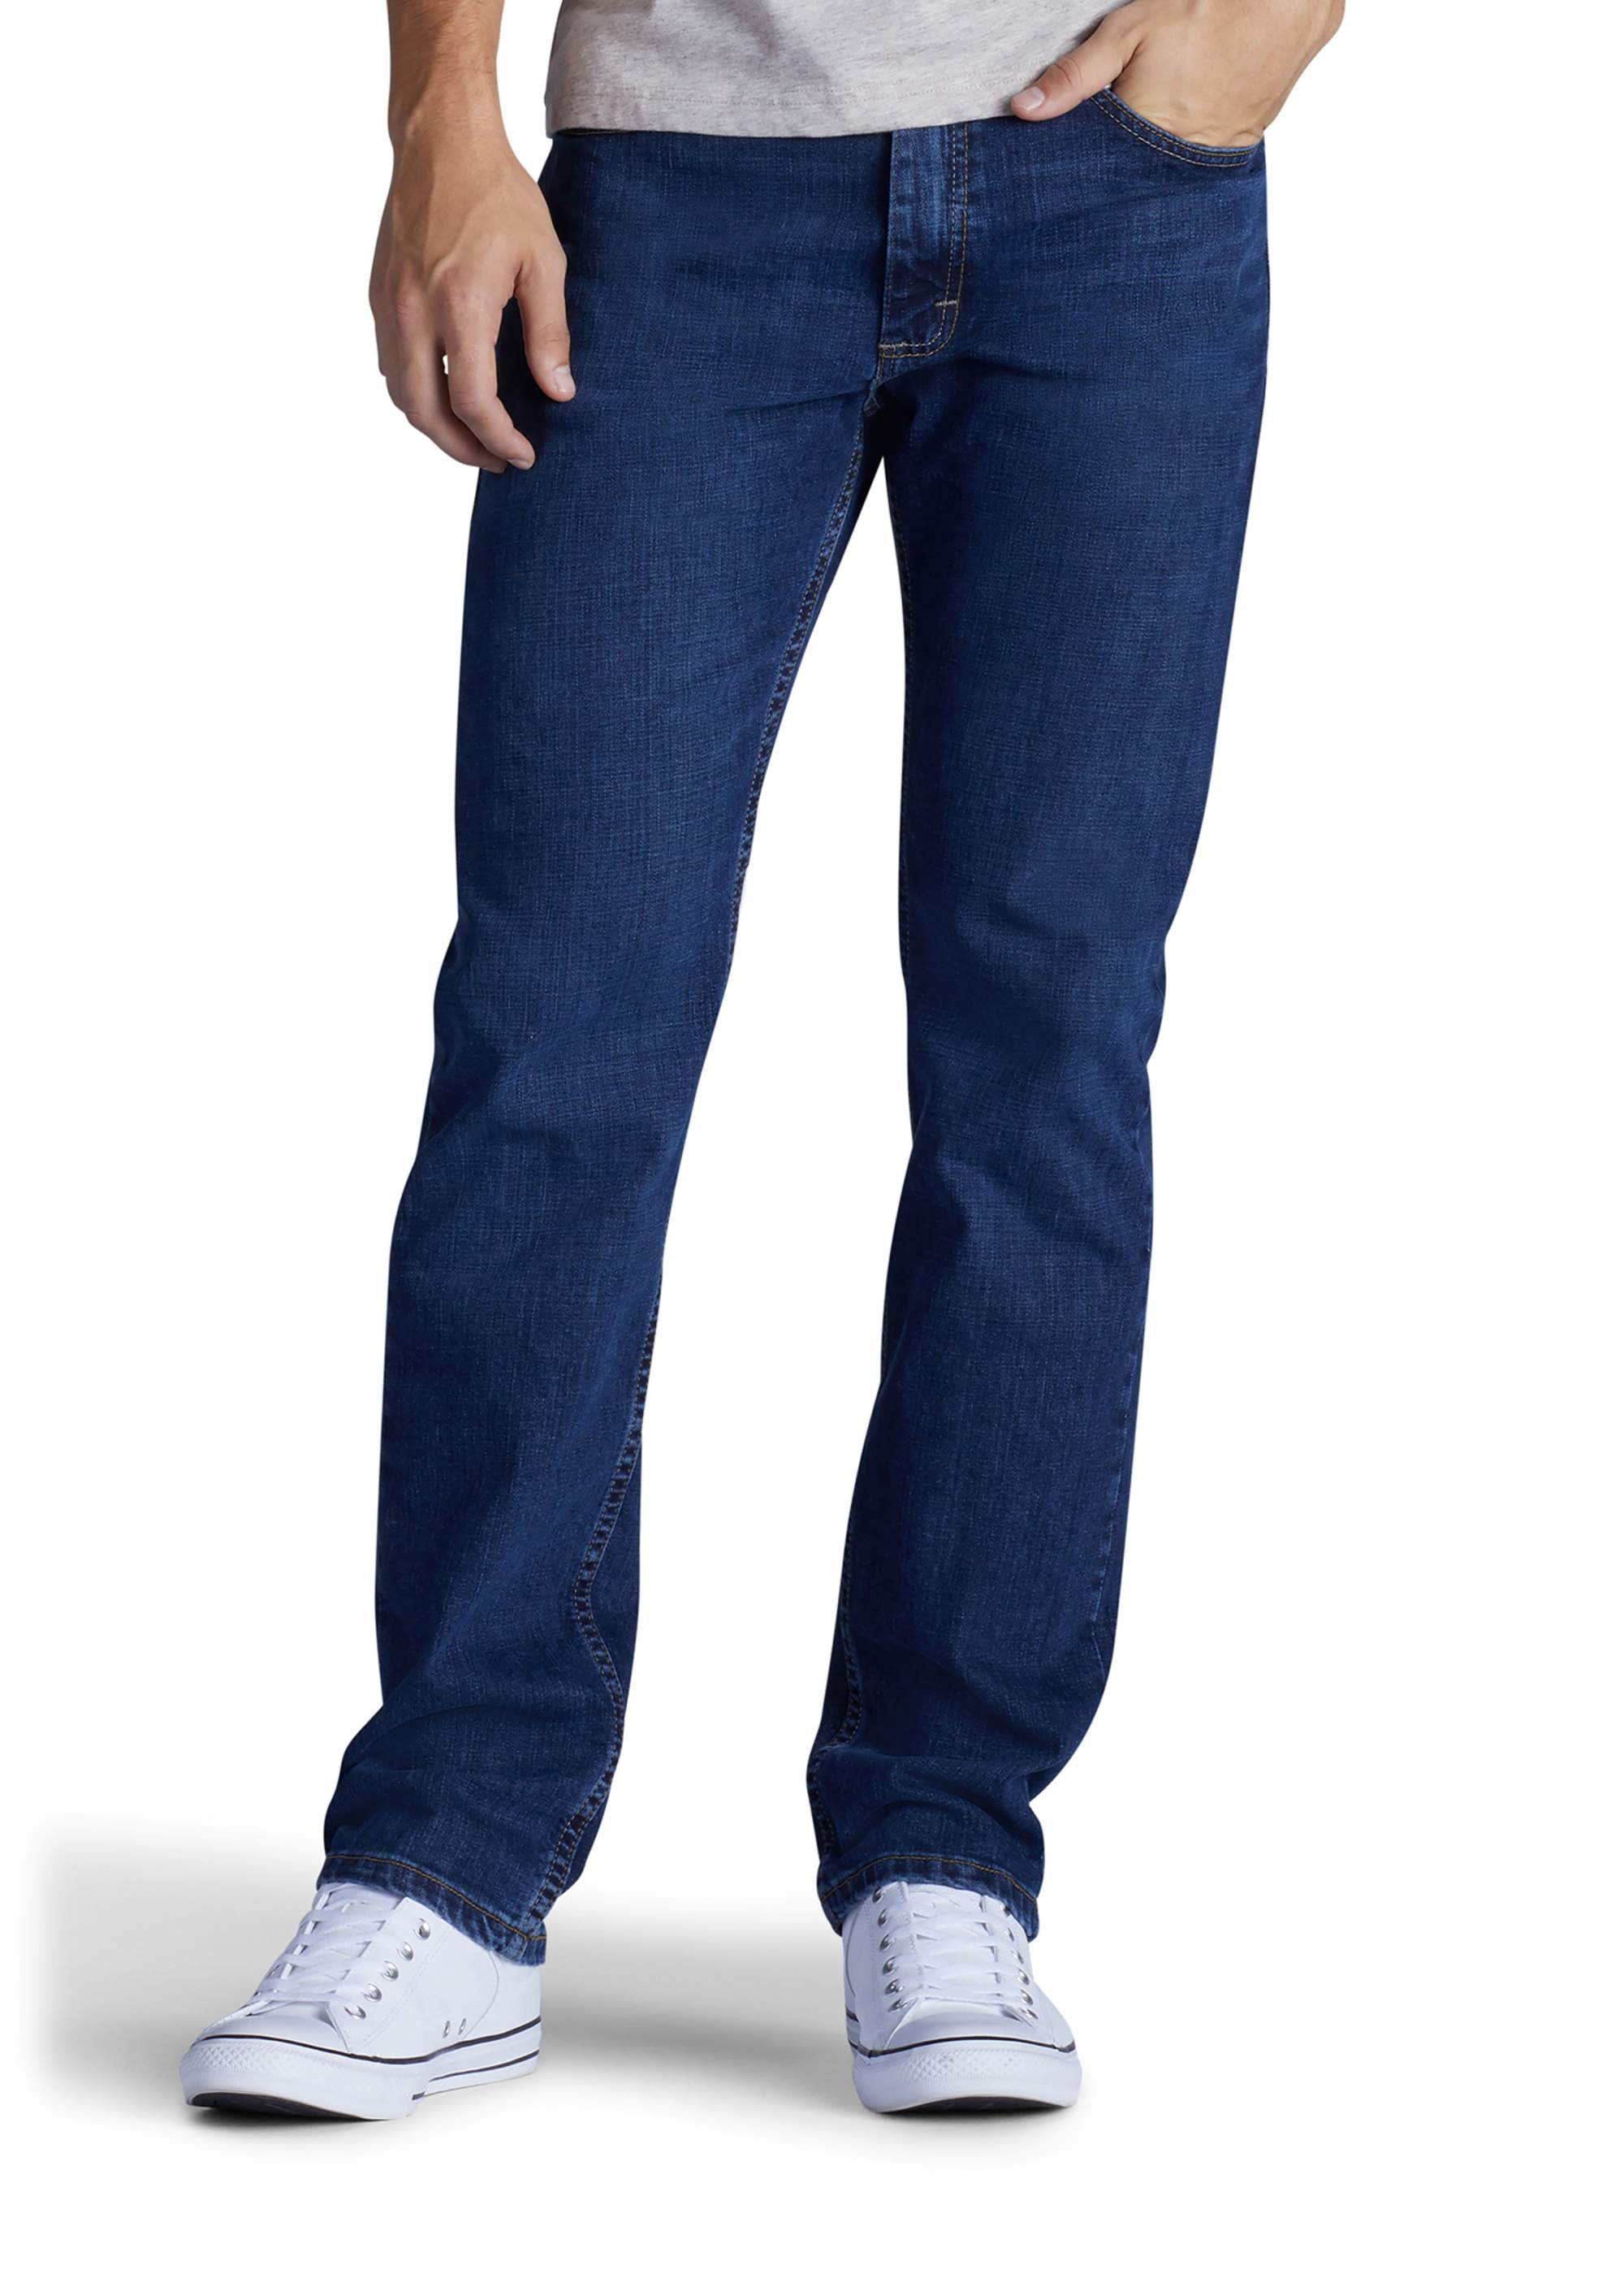  LEE Jean Premium Select ajuste clásico pierna recta para hombre,  29 cintura x 30 largo : Ropa, Zapatos y Joyería